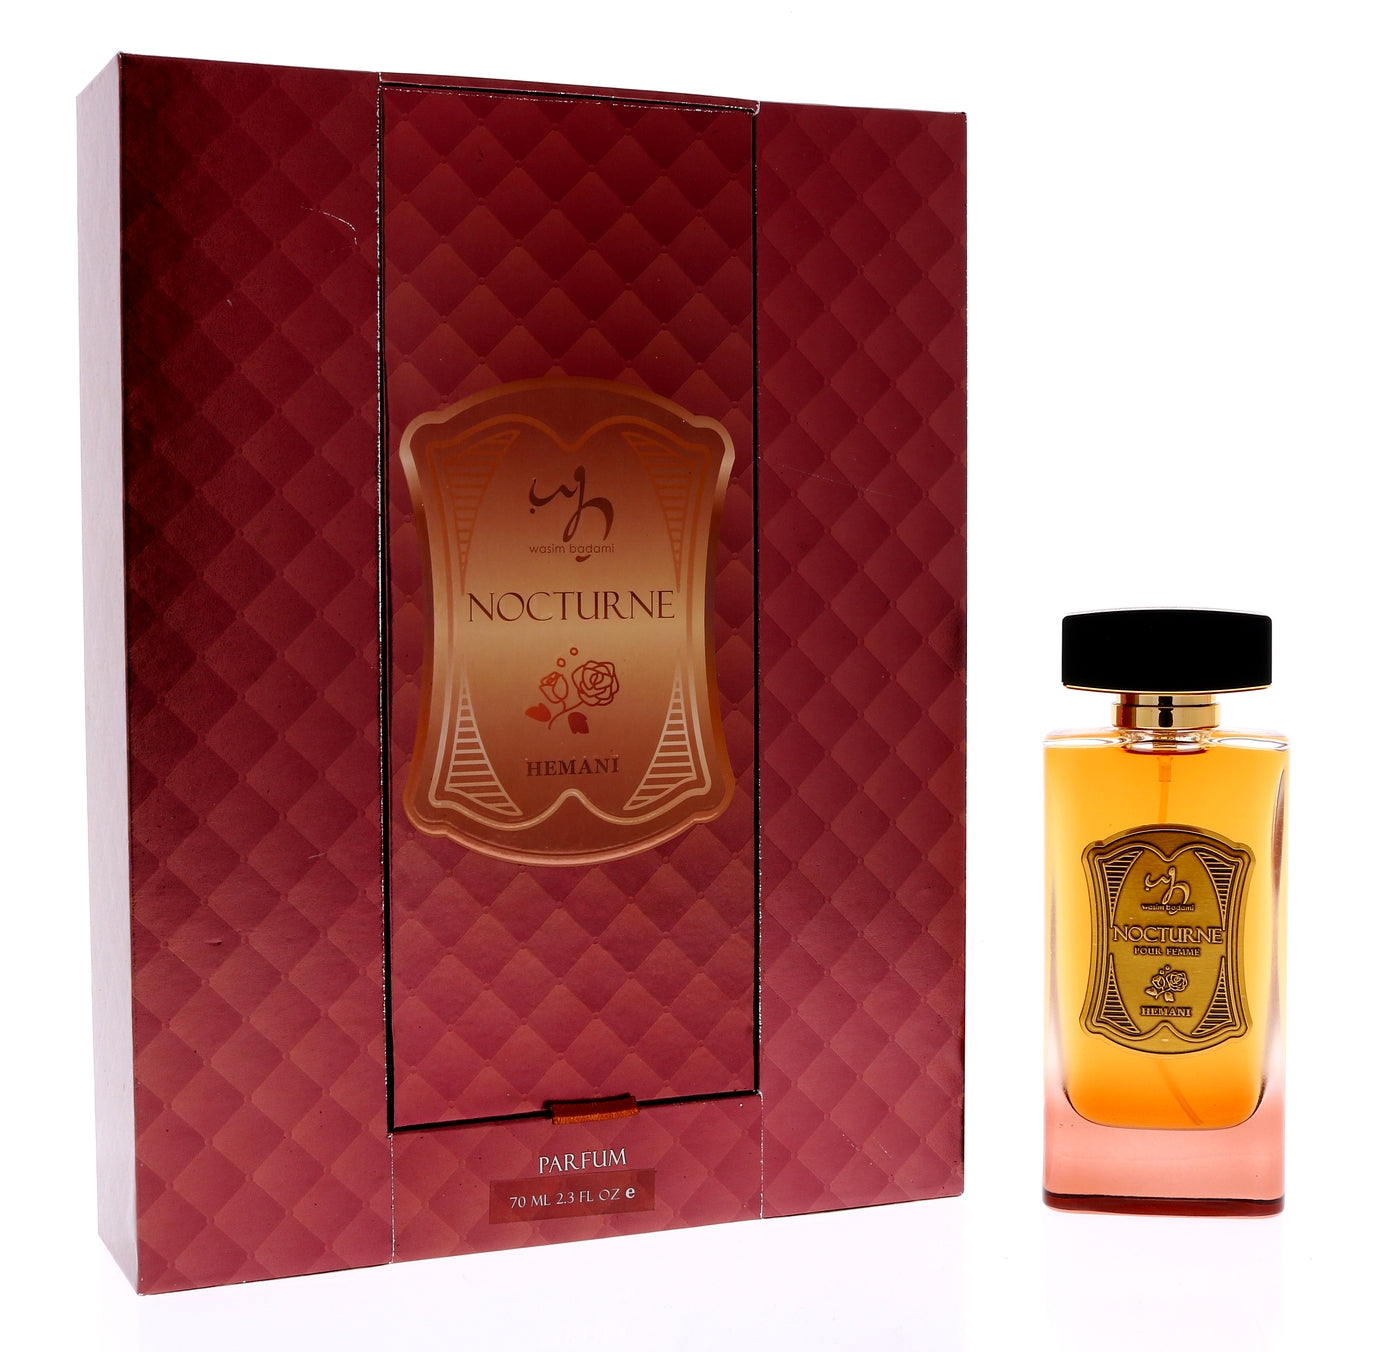 Luxury Women Perfume LES SABLES ROSES Eau De Parfum SPRAY 100ml